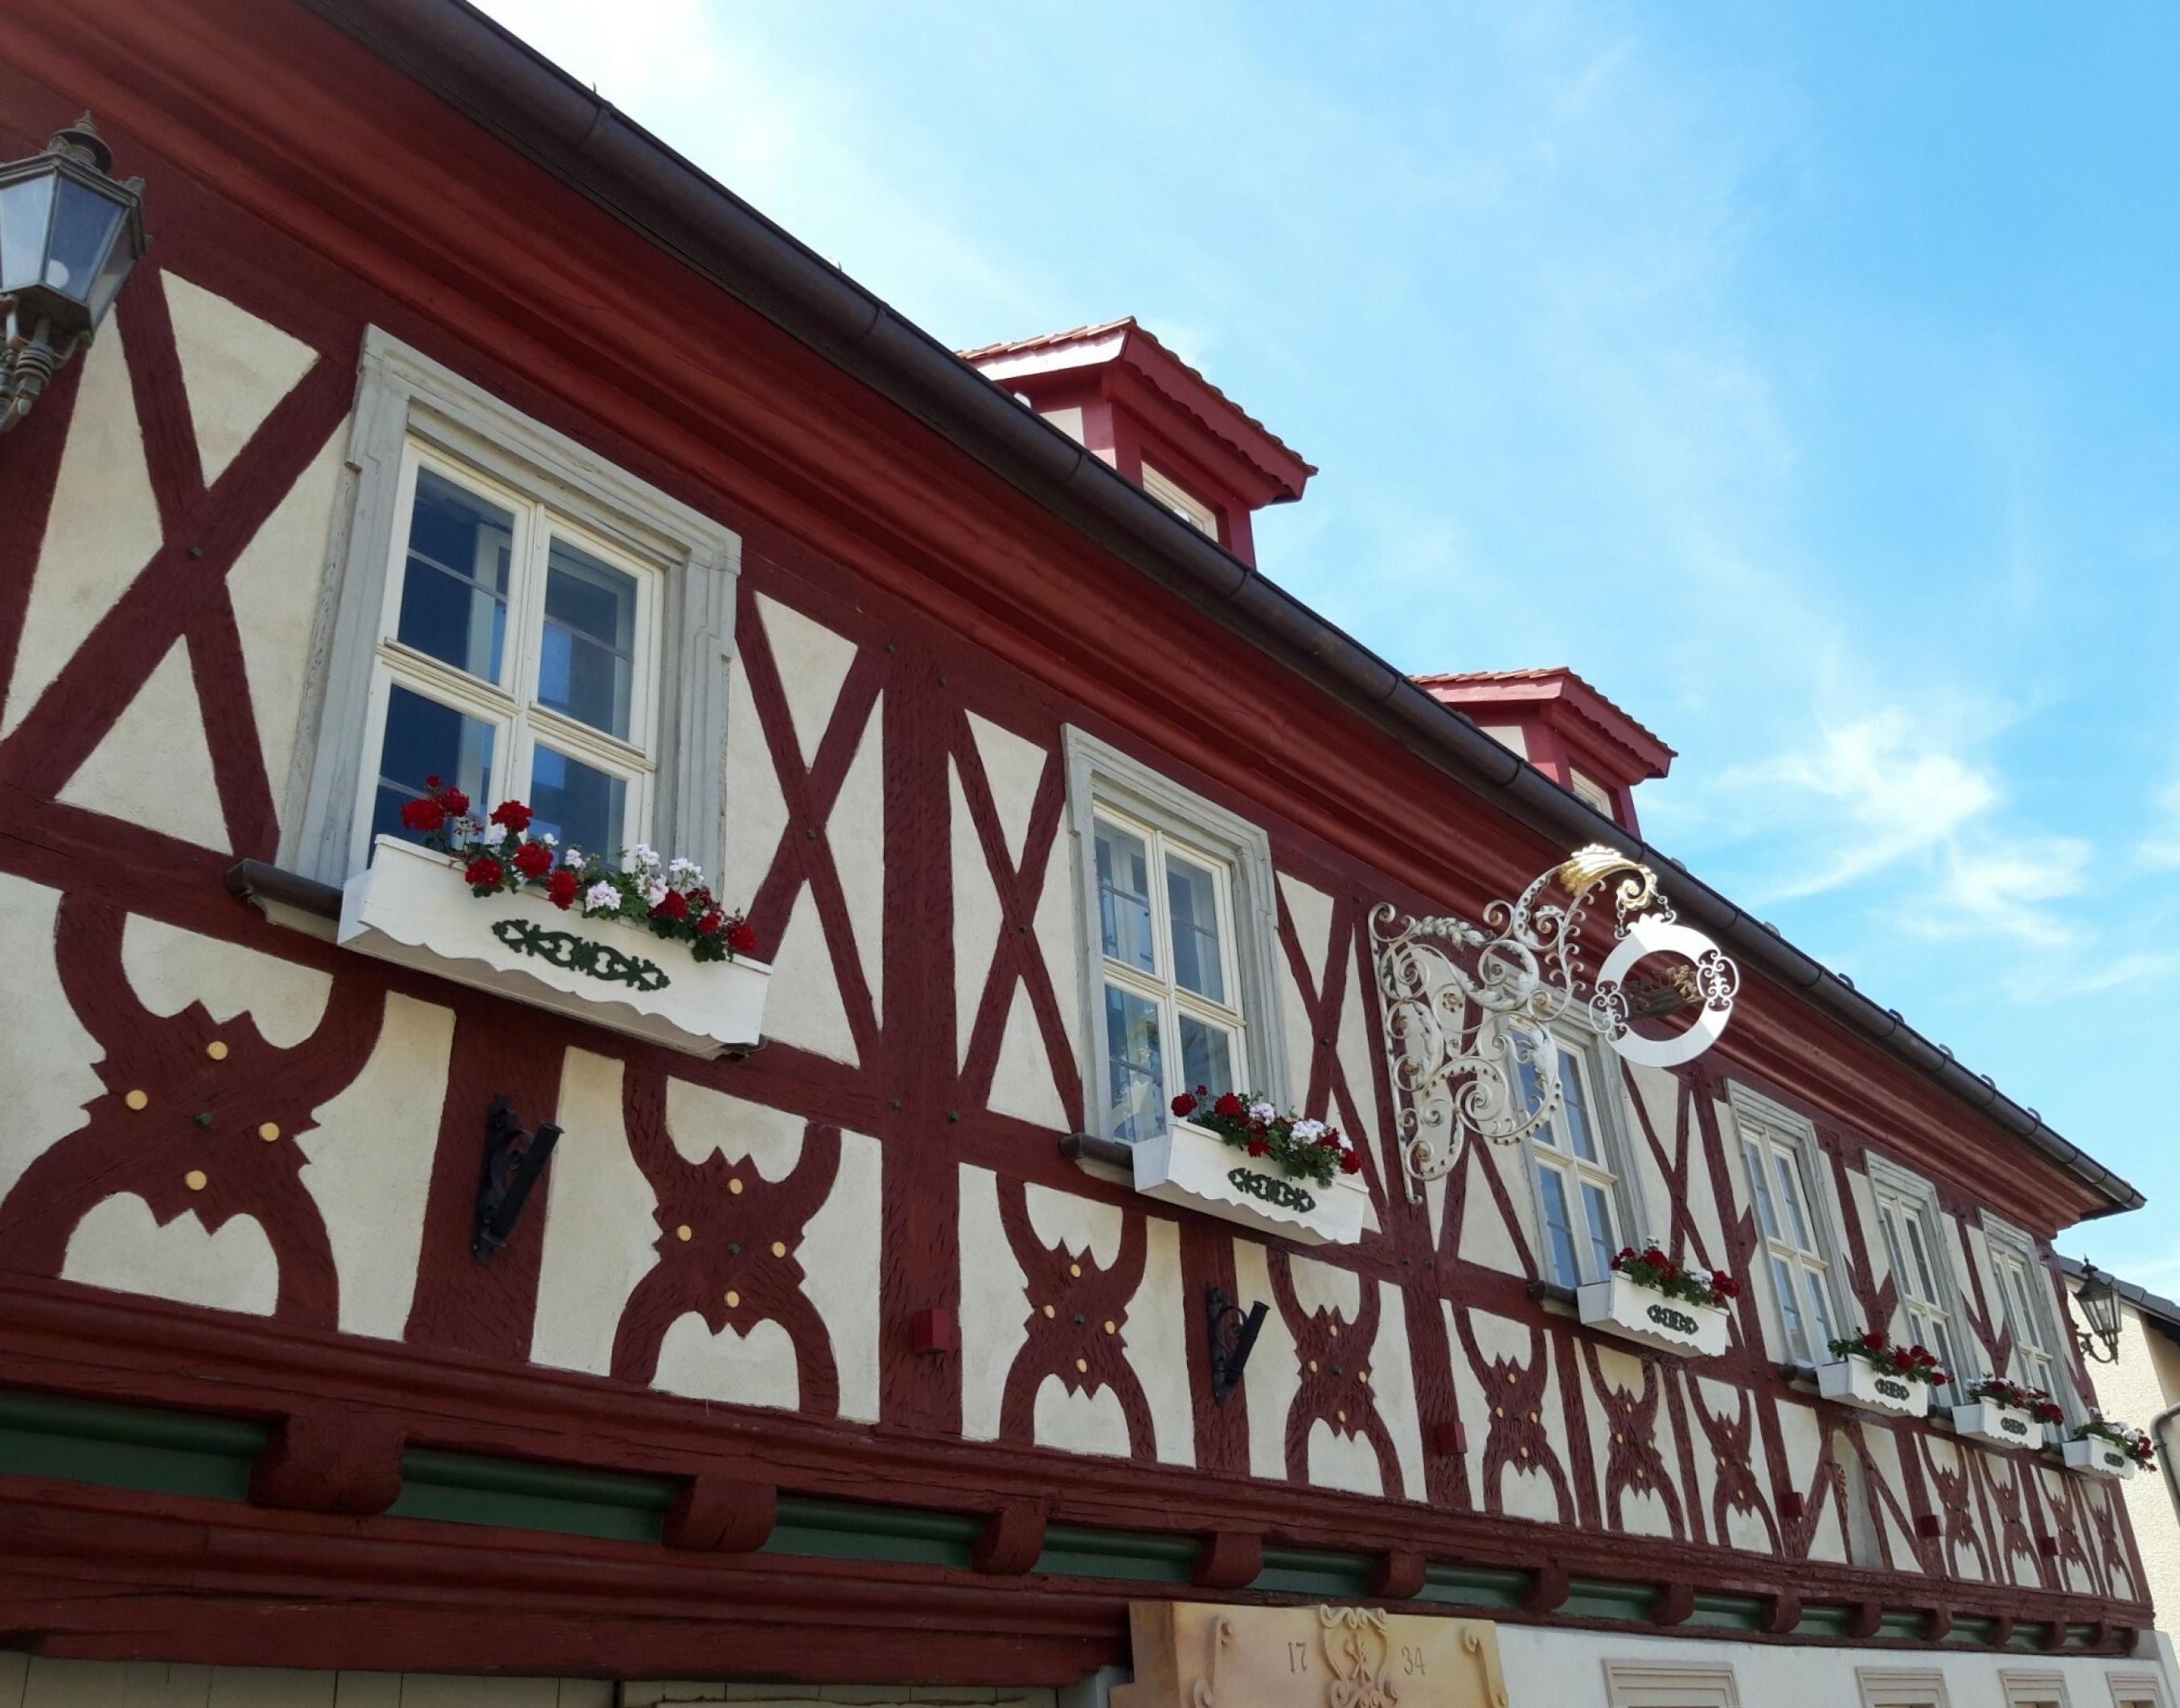 Sauber in rot gestrichen, korrespondiert das Holz der Außenfassade farblich mit den Geranien unter den kleinen schmucken Fenstern.